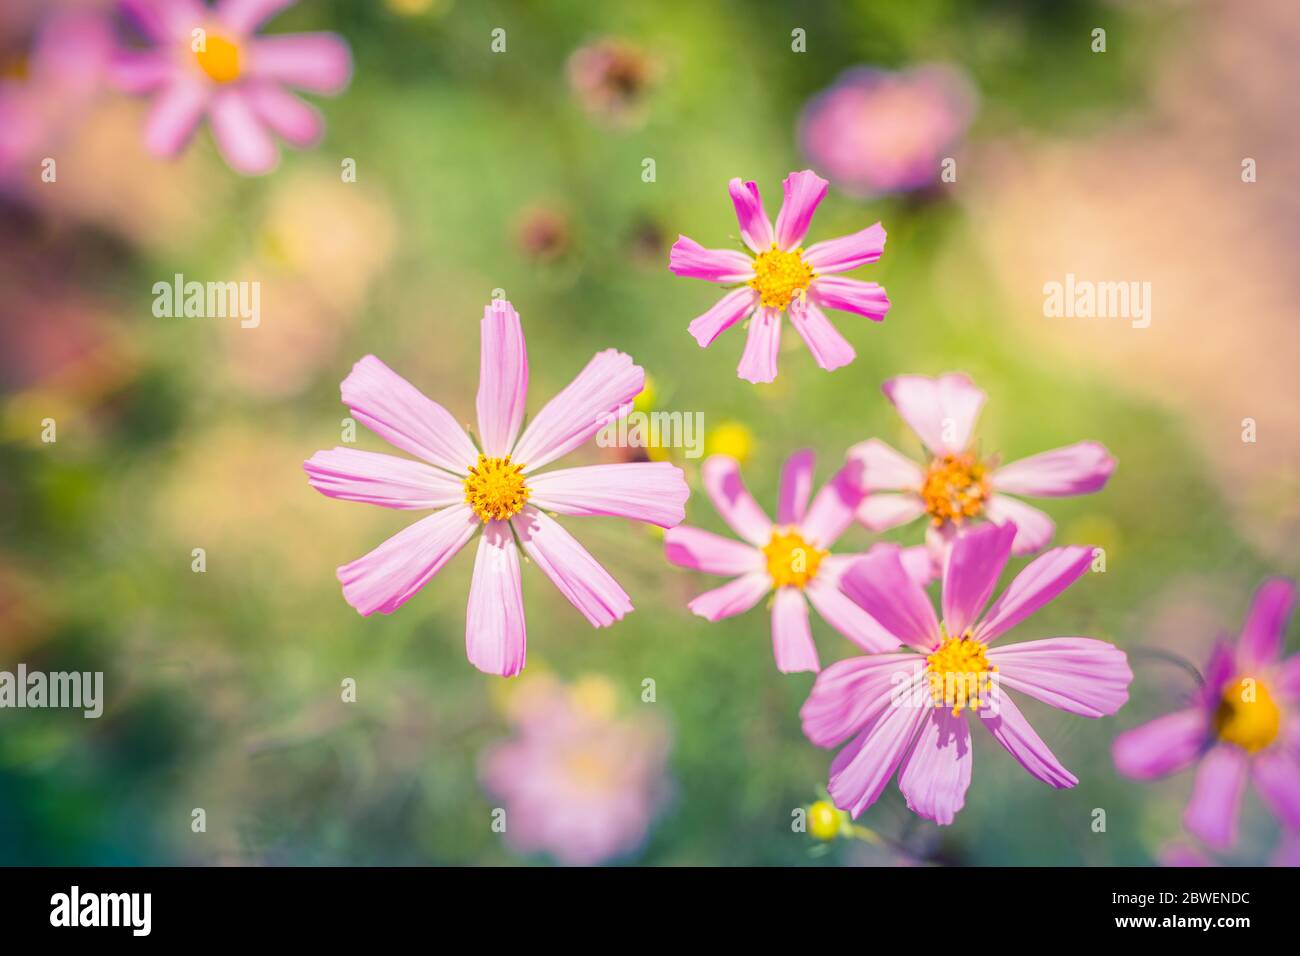 Artistico fiori immagini e fotografie stock ad alta risoluzione - Alamy